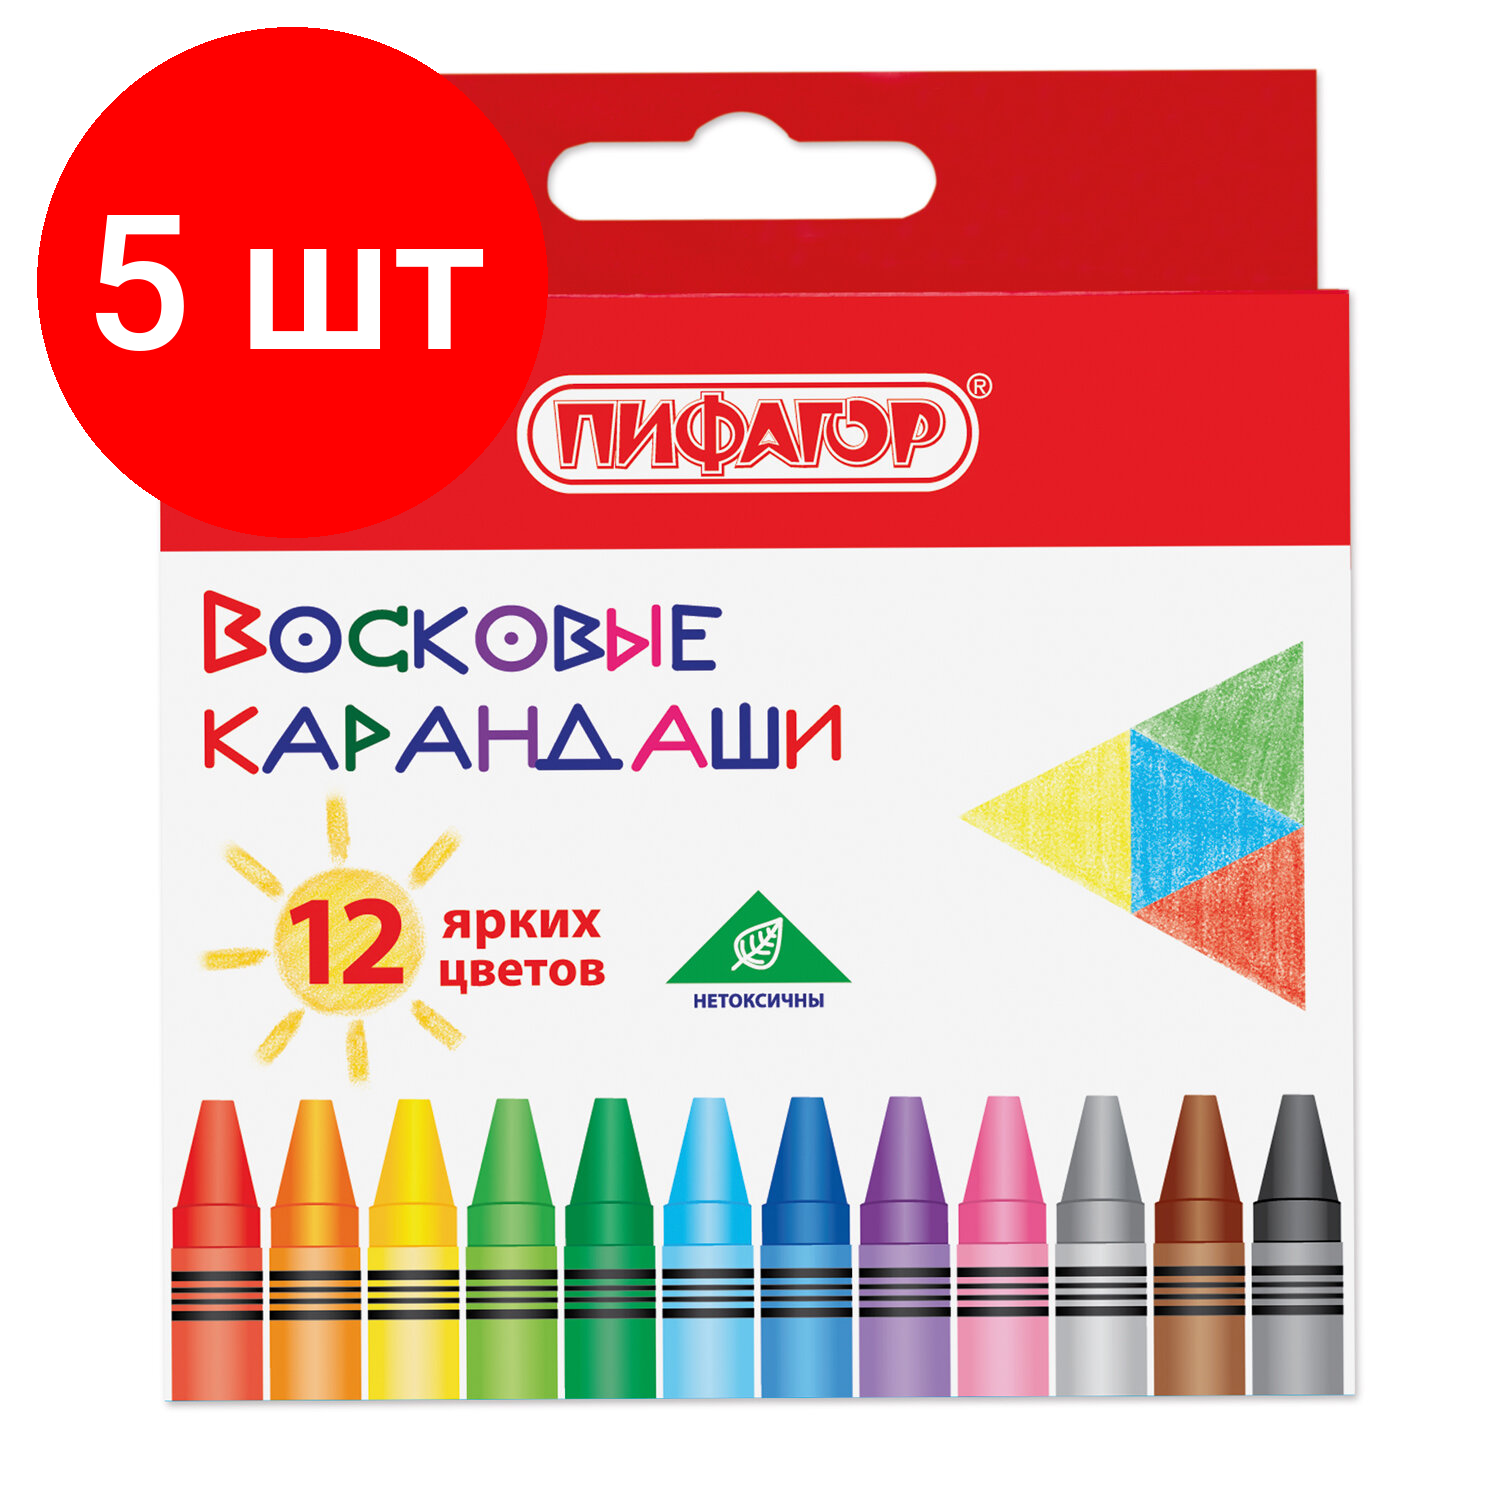 Комплект 5 шт, Восковые карандаши пифагор "солнышко", набор 12 цветов, 227279